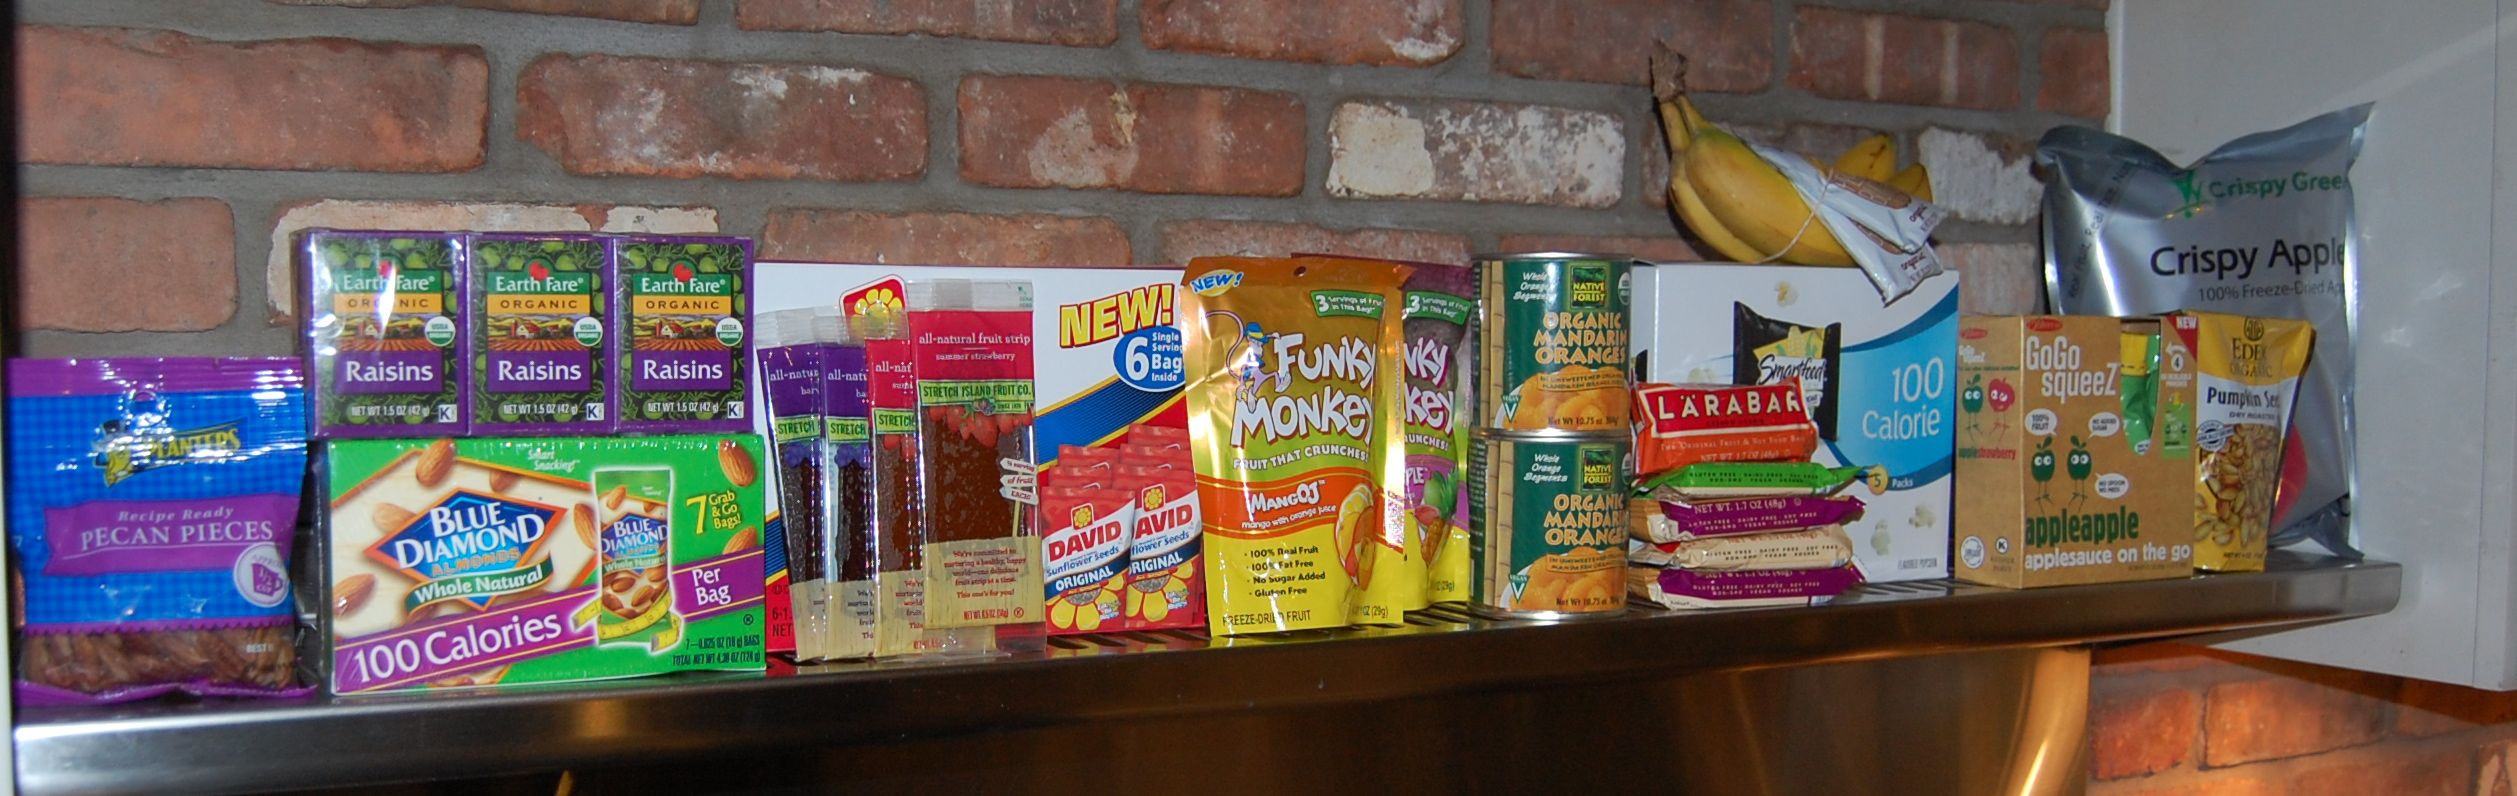 Healthy Prepackaged Snacks
 Prepackaged Snacks for School 100 Days of Real Food